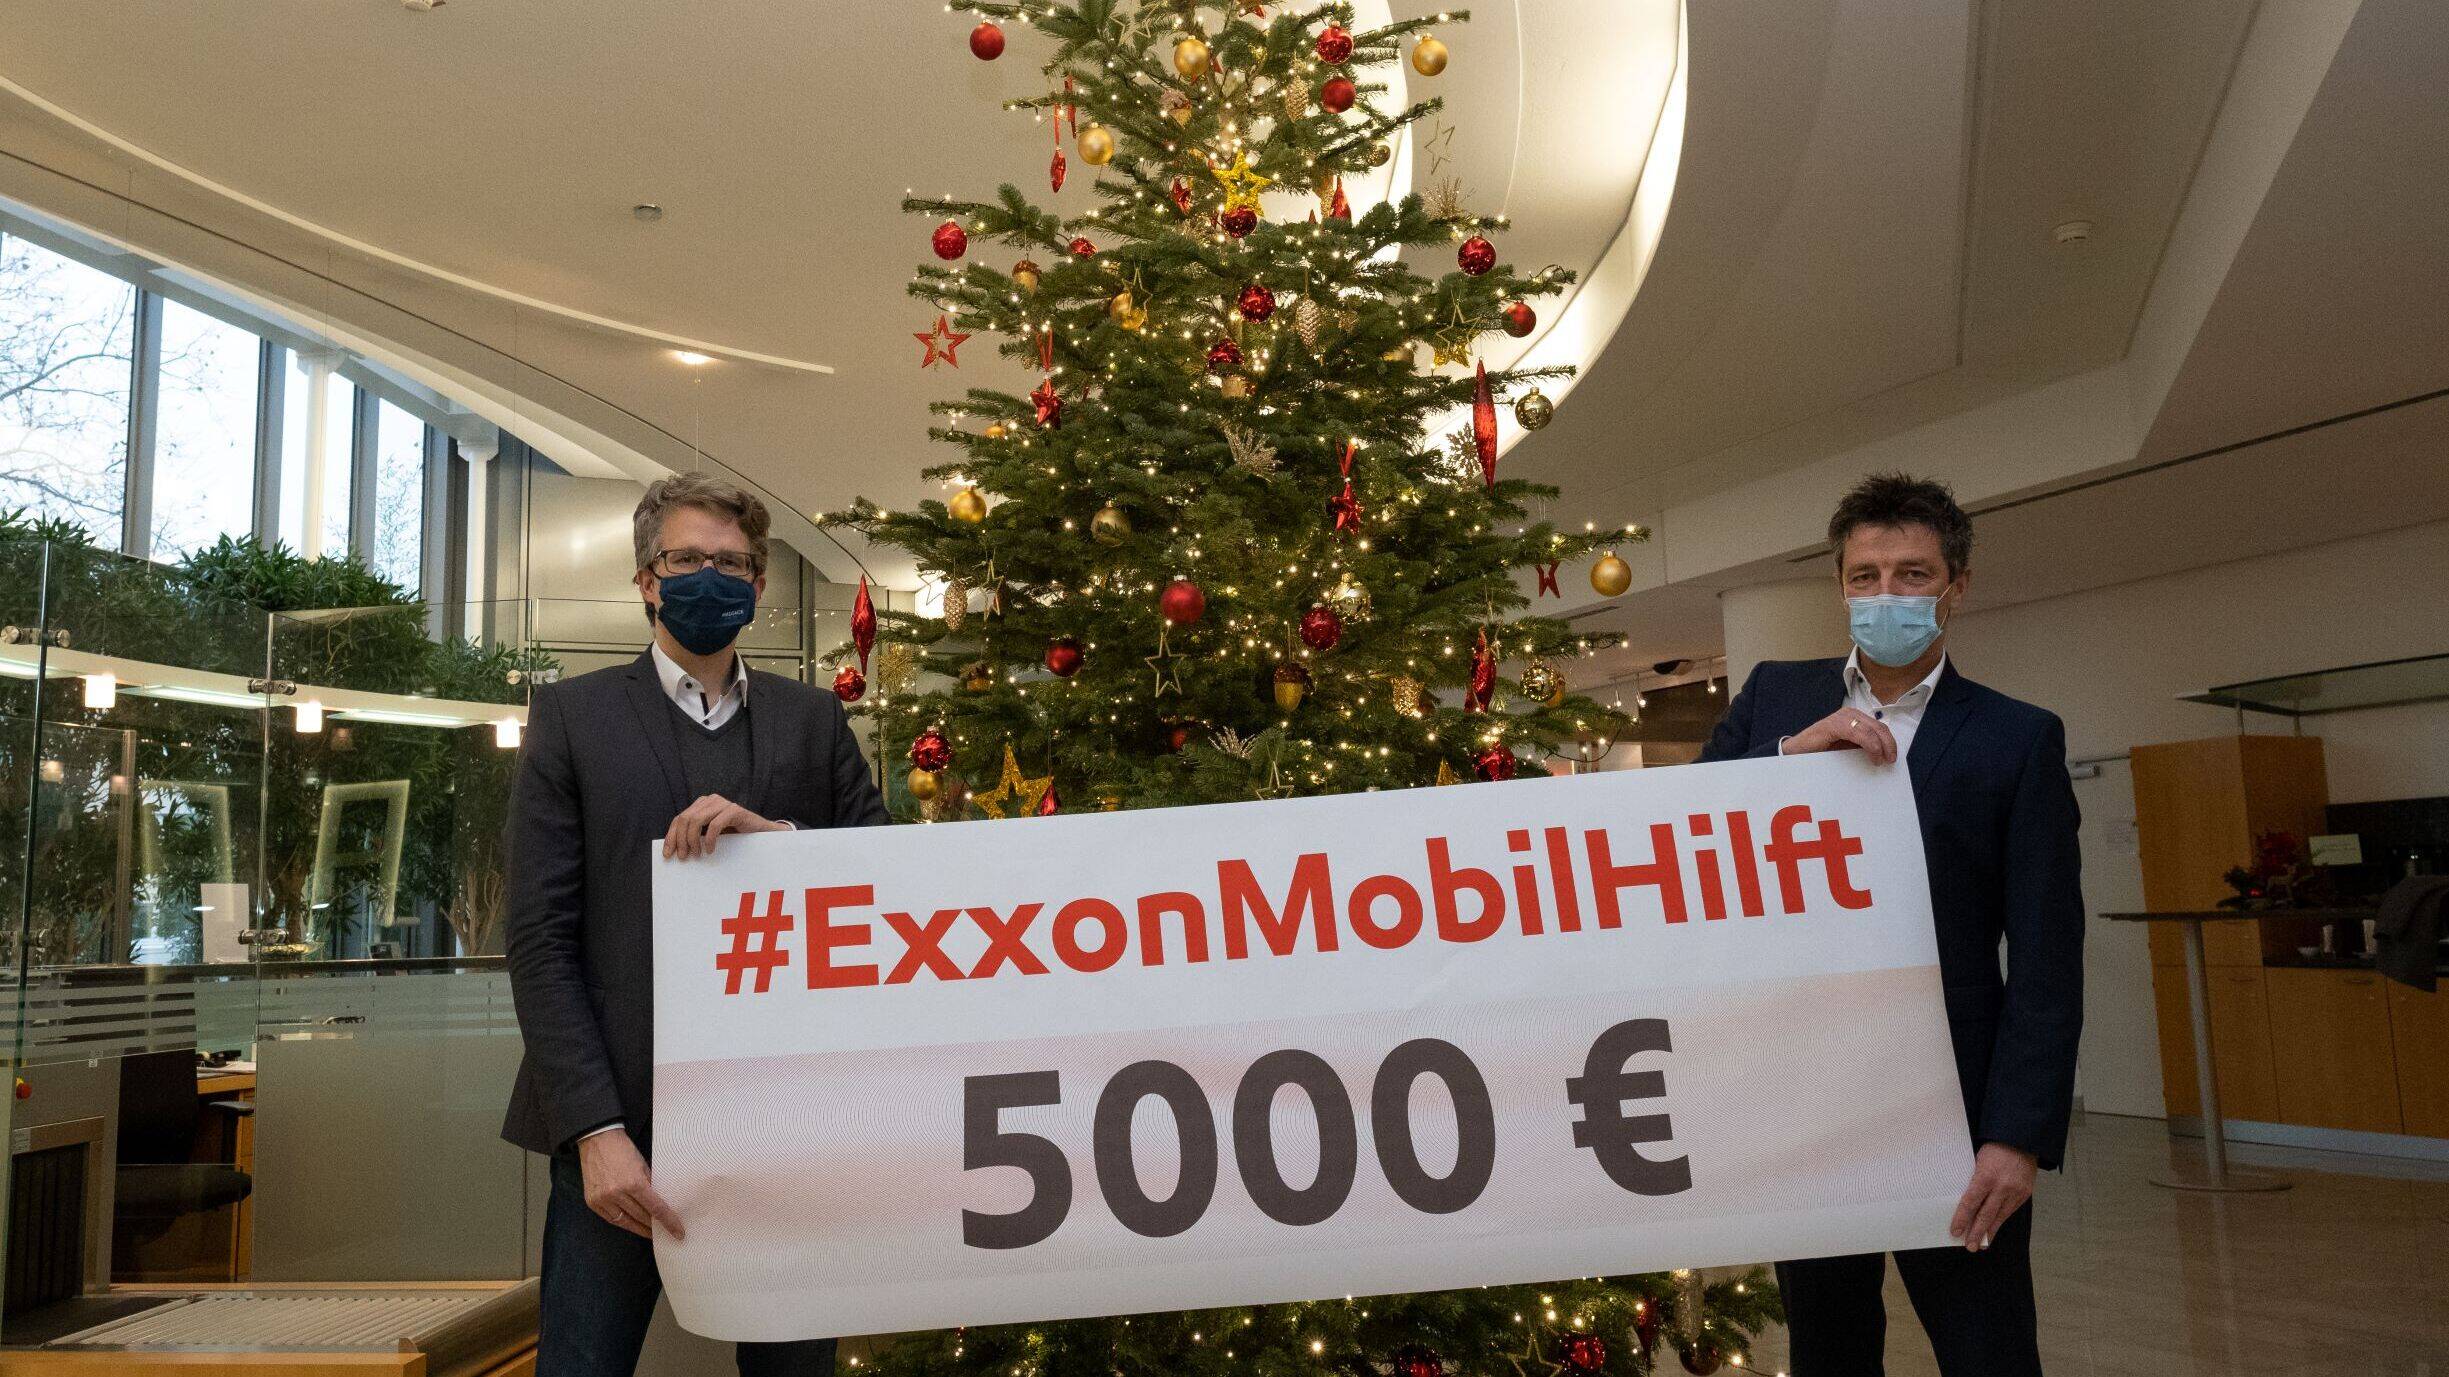 Image Bild: HAZ-Redakteur Heiko Randerman (links) zusammen mit ExxonMobil-Geschäftsführer Axel Weiß.©Schaarschmidt